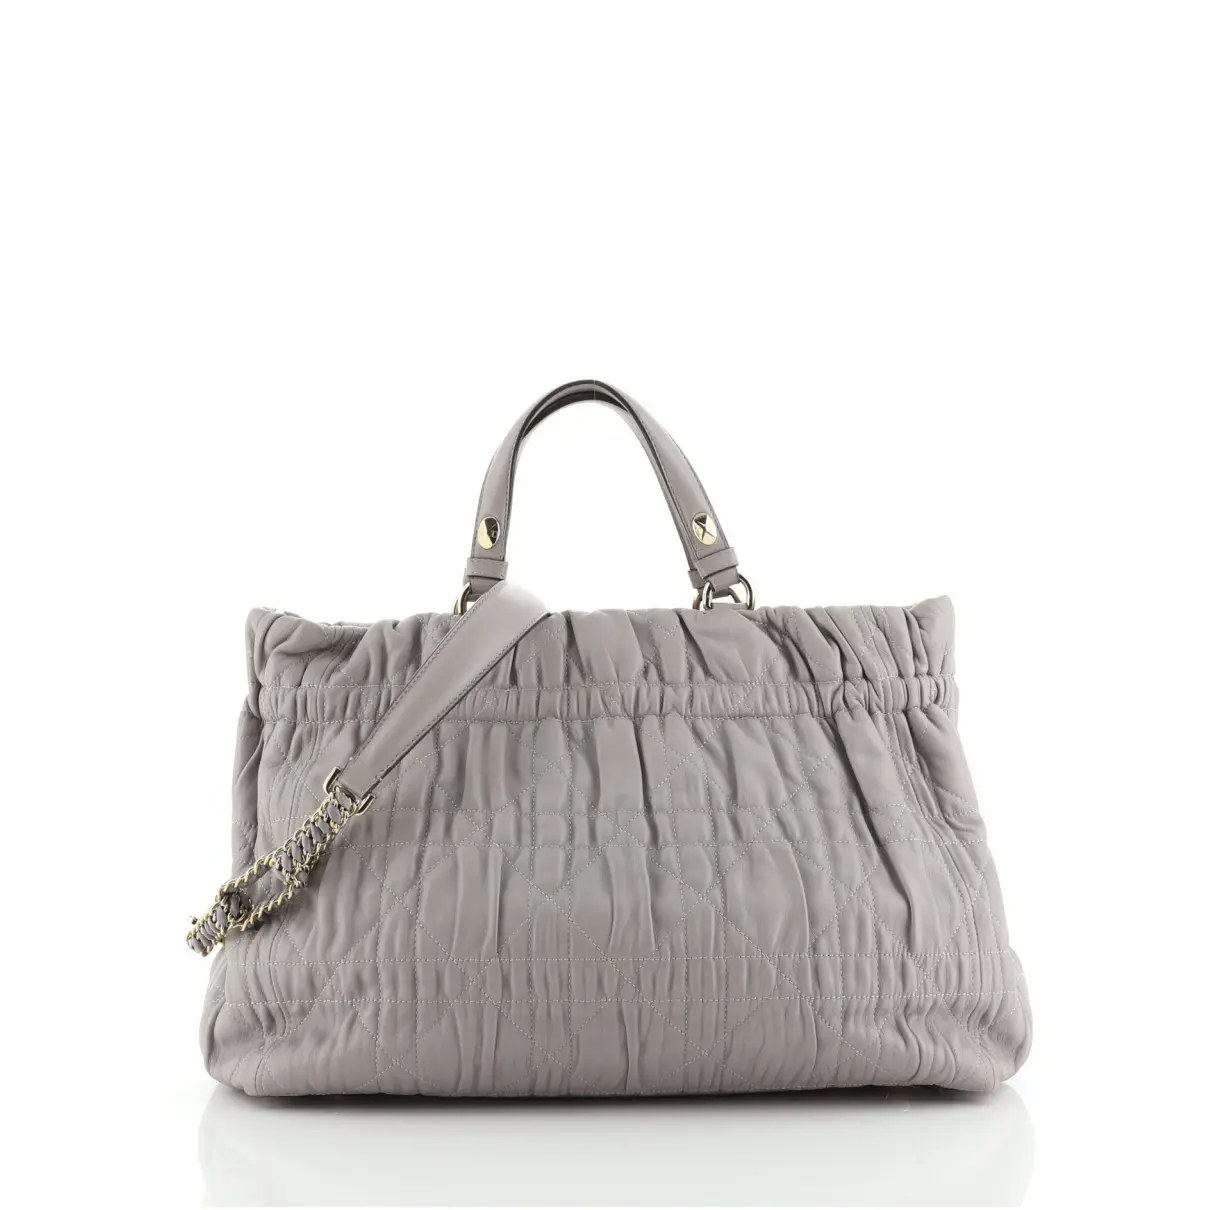 Leather handbag Christian Dior